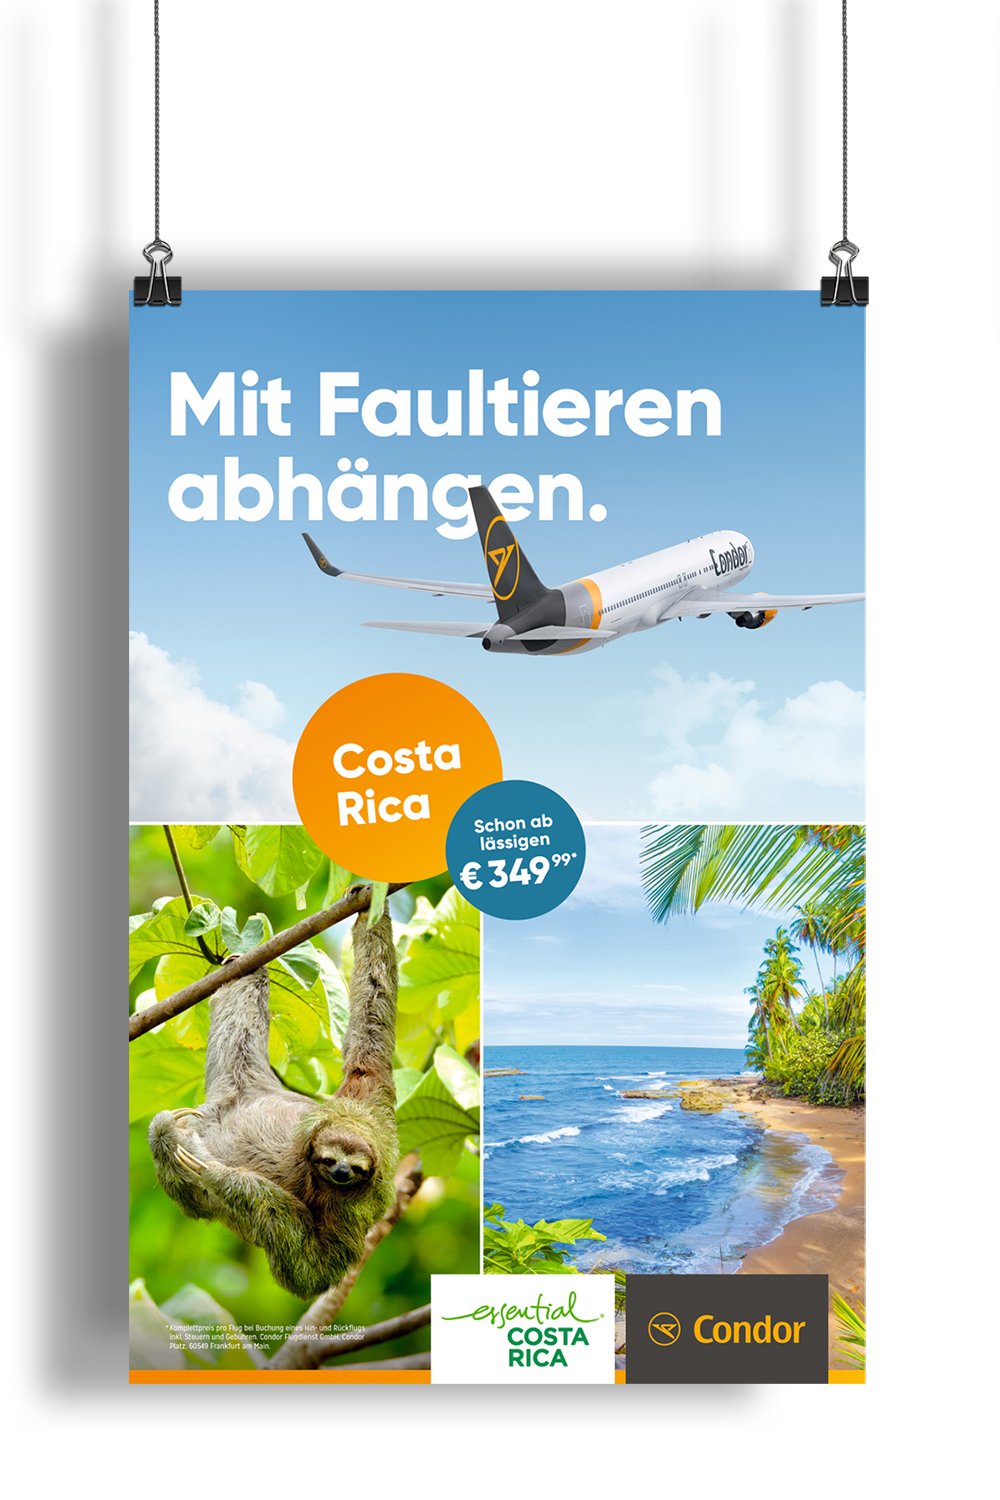 Excite Werbeagentur Condor Plakat mit Headline "Mit Faultieren abhängen."